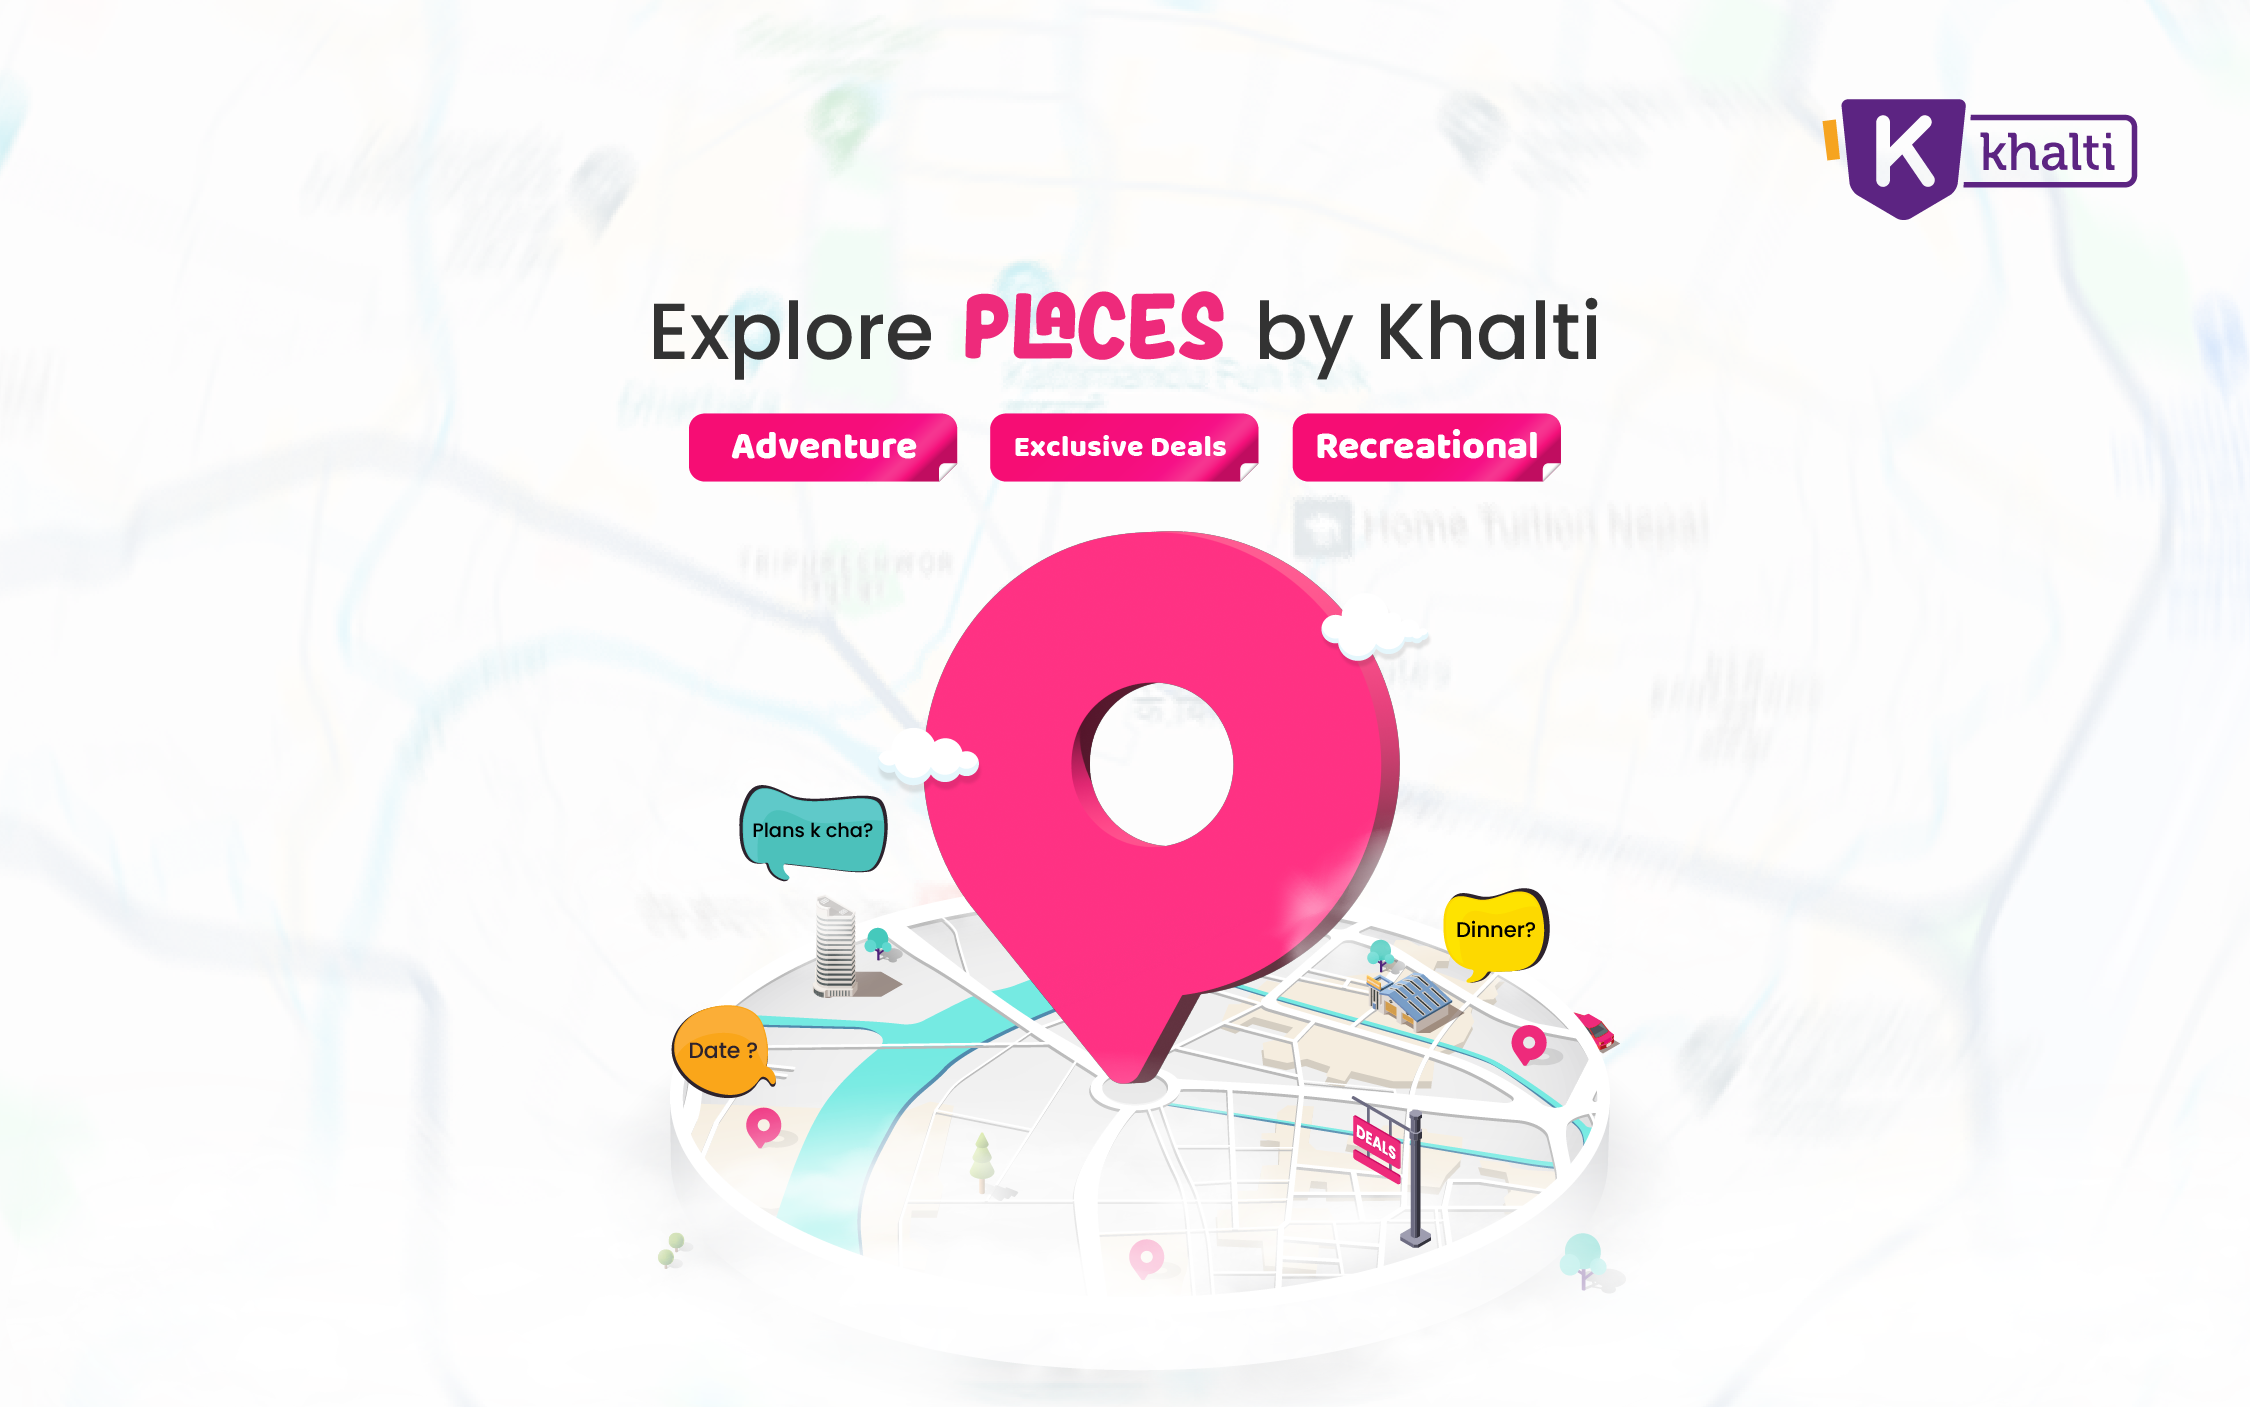 Explore Places by Khalti